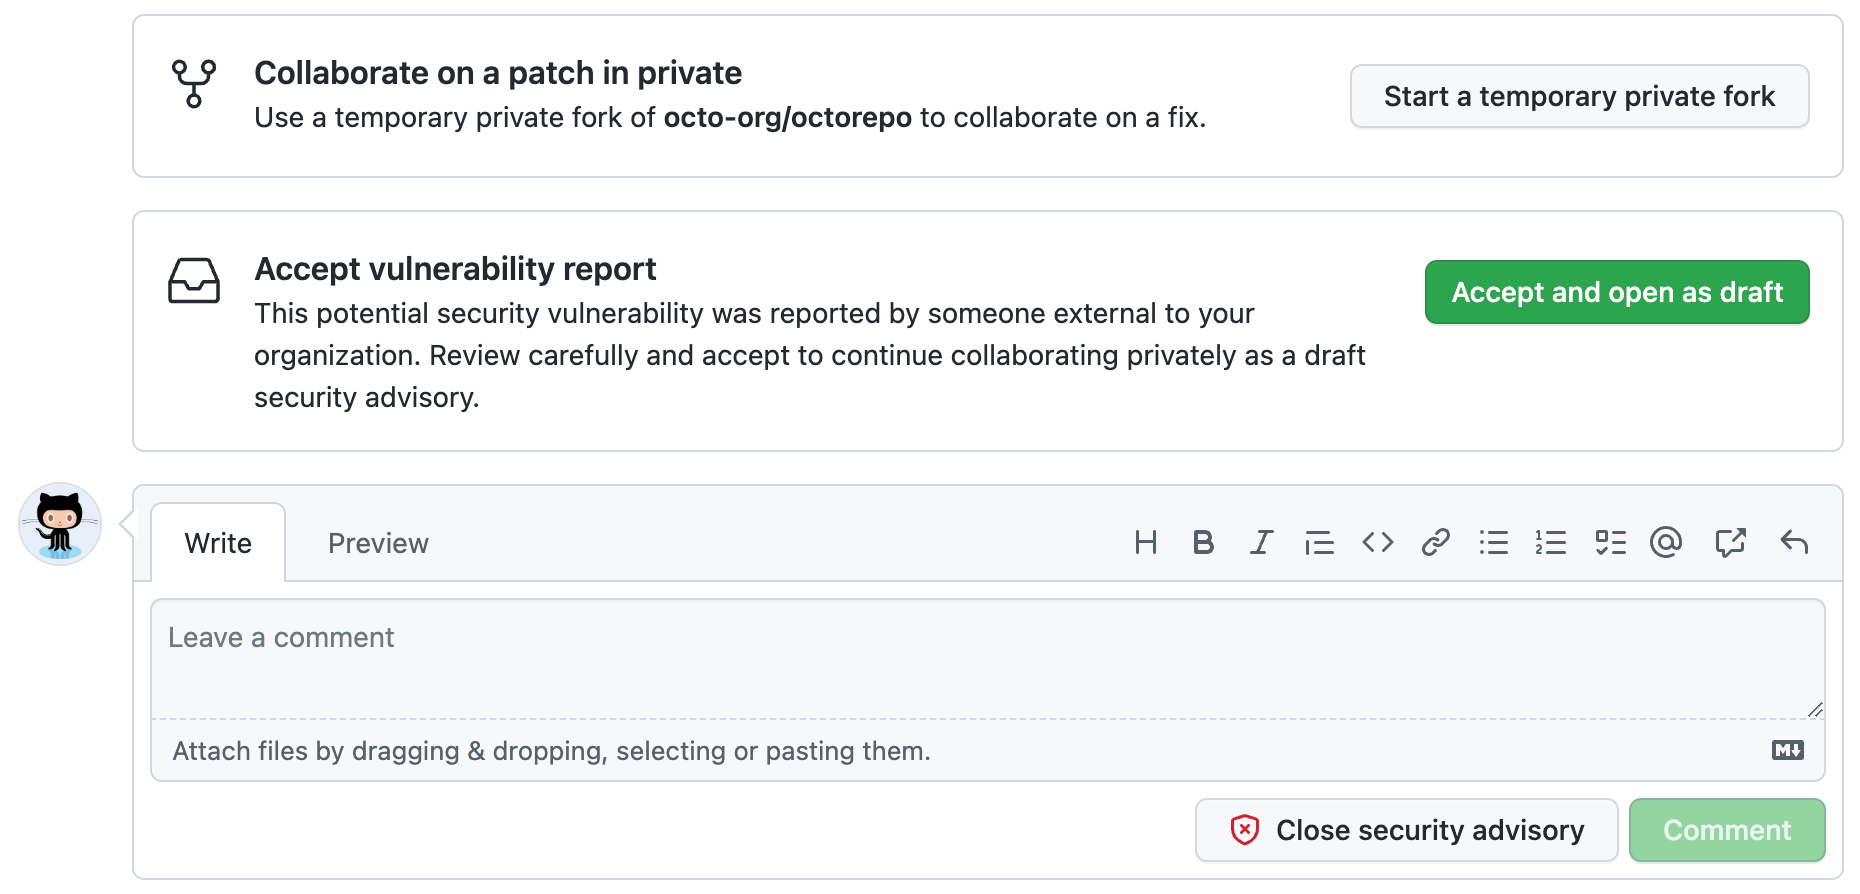 Captura de tela mostrando as opções disponíveis para o administrador do repositório ao examinar um relatório de vulnerabilidade enviado externamente